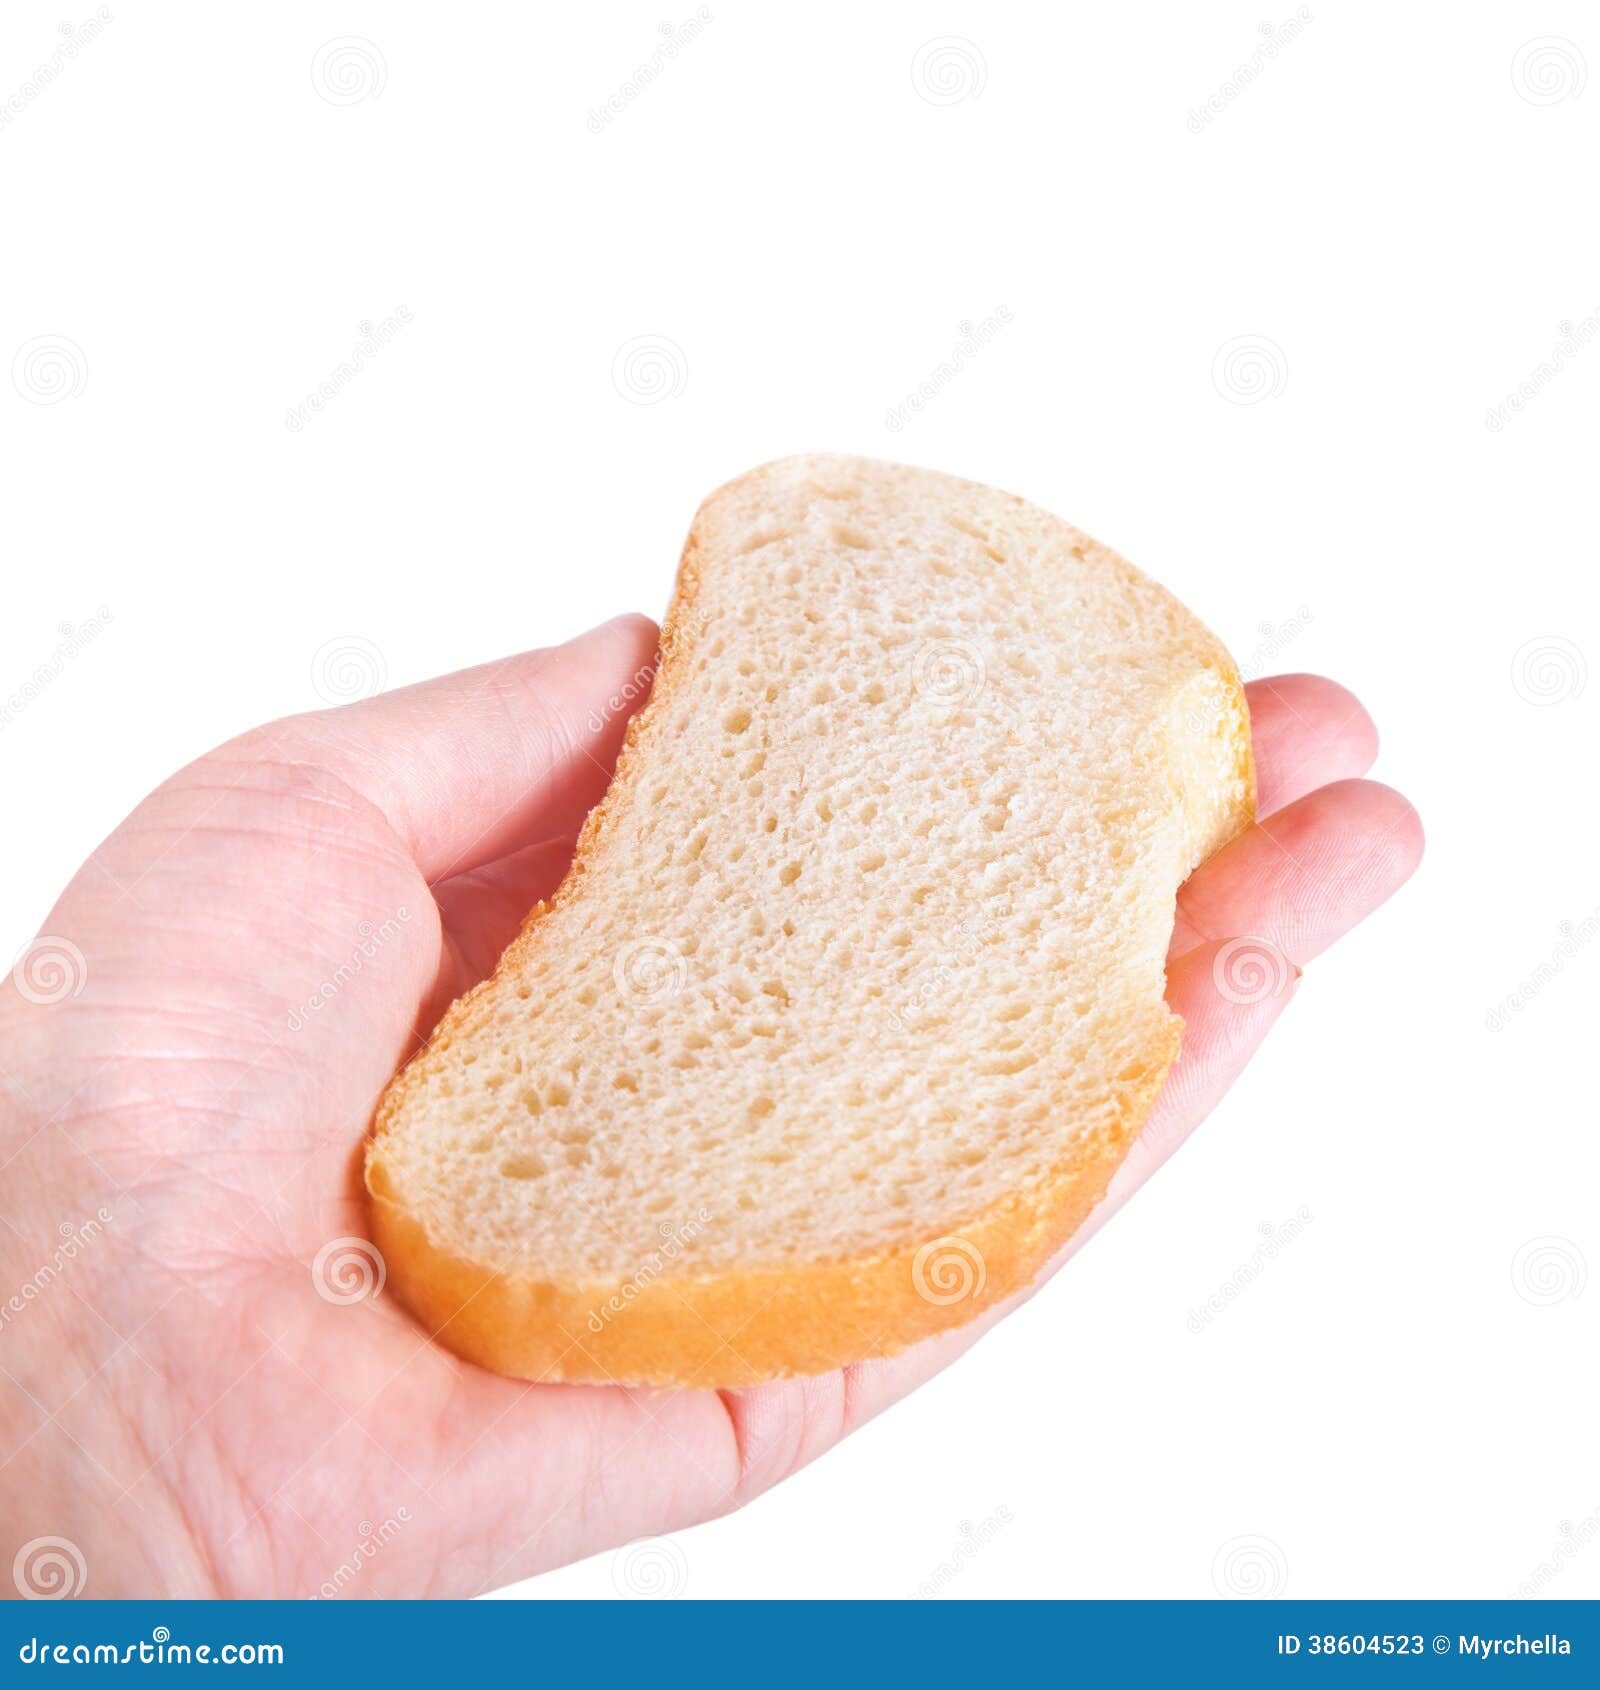 Кусочек маленький кусочек видео. Хлеб на ладошке. Кусок хлеба на ладошке. Рука держит кусок хлеба. Кусочек хлеба в руке.